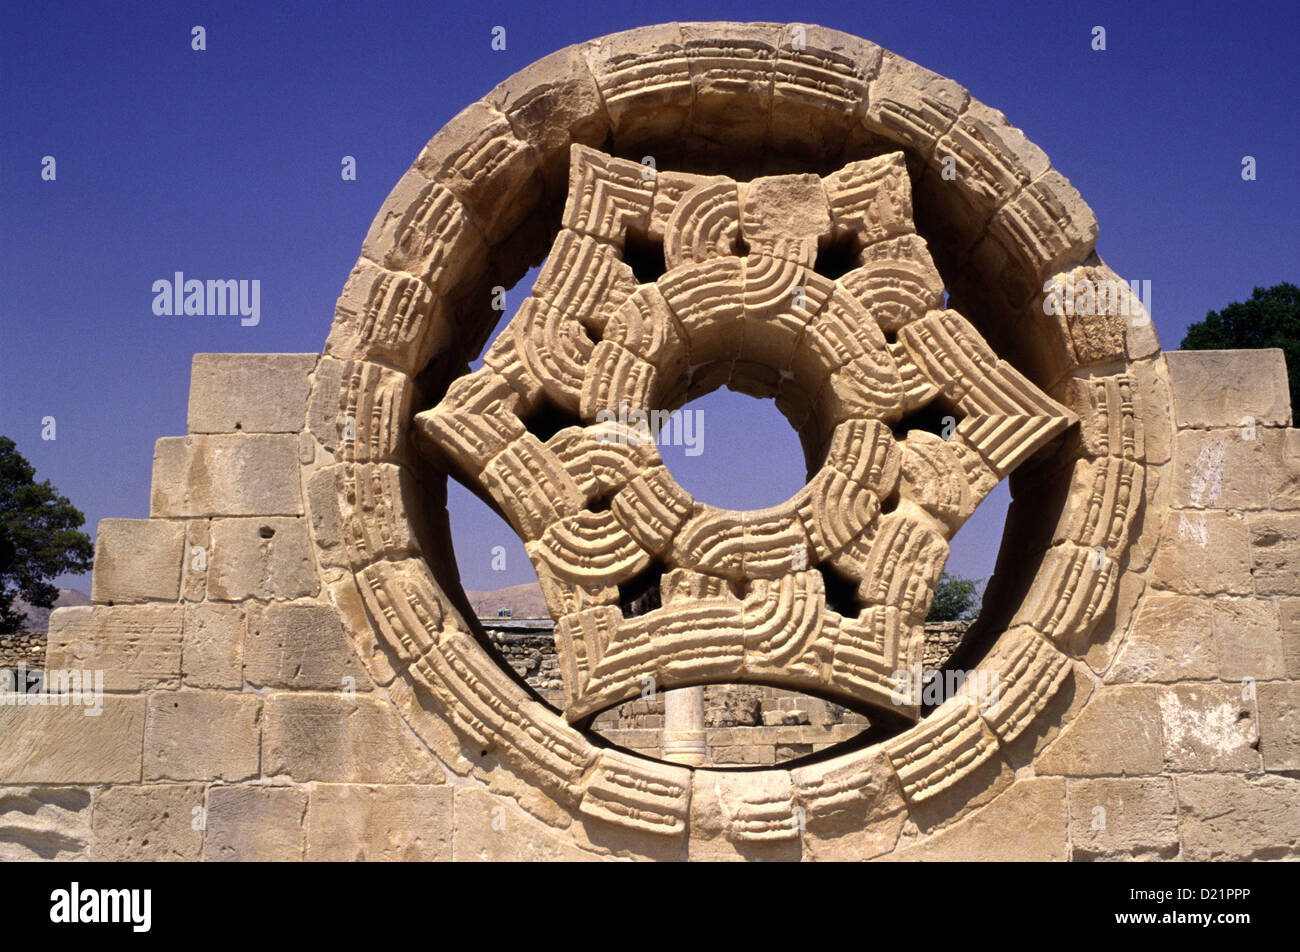 Reconstruido ornamento en socorro de Khirbat al-Mafjar popularmente conocido como el Palacio de Hisham Islámicos tempranos de un sitio arqueológico cerca de Jericó, en la Ribera Occidental de Israel Foto de stock